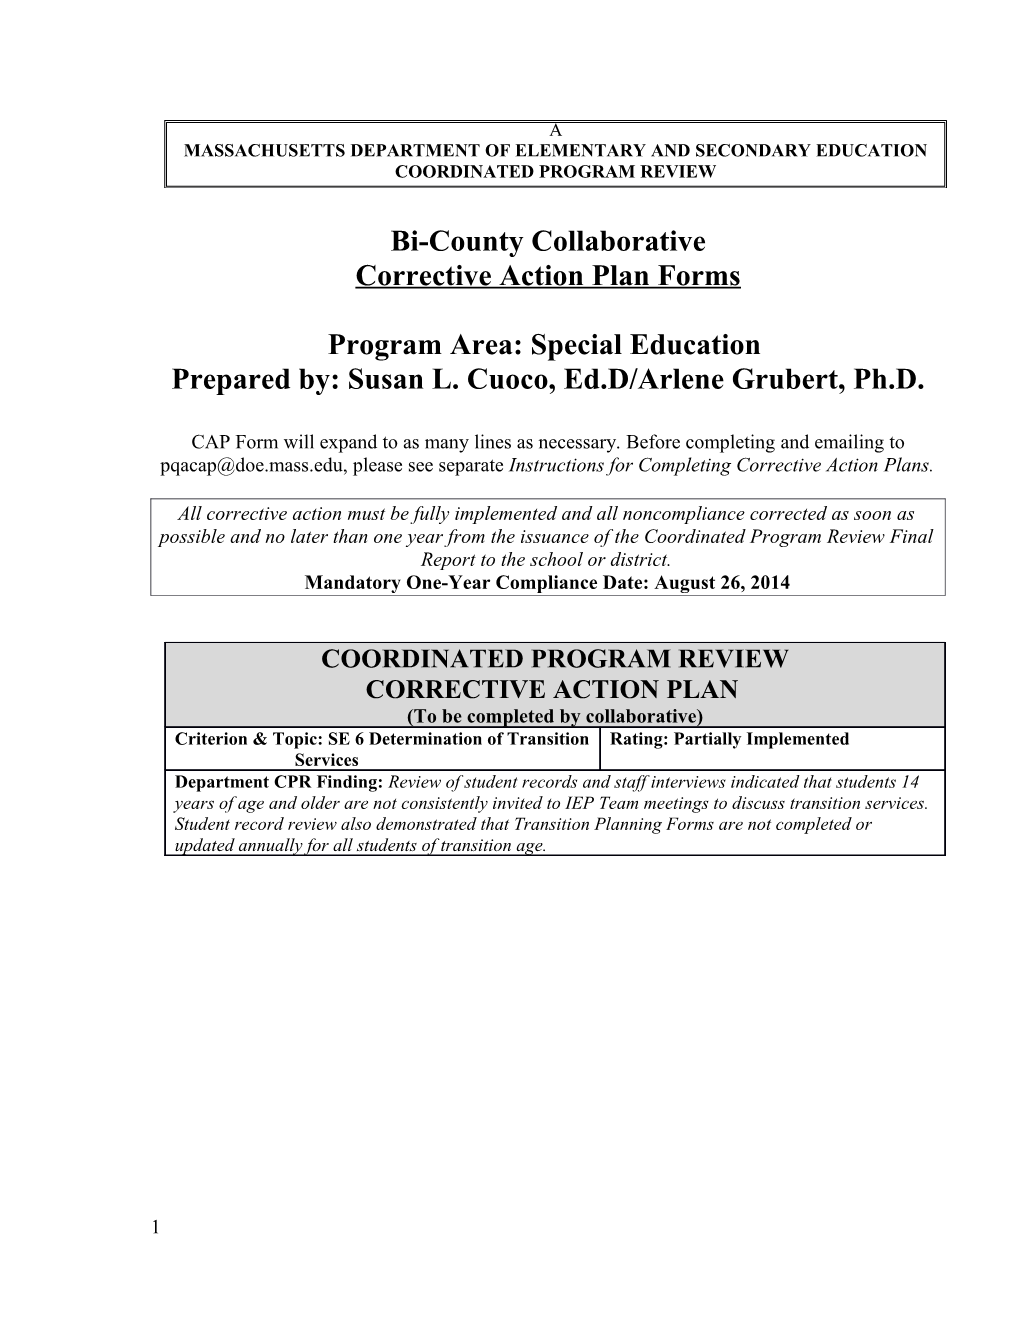 Bi-County Collaborative CAP 2013